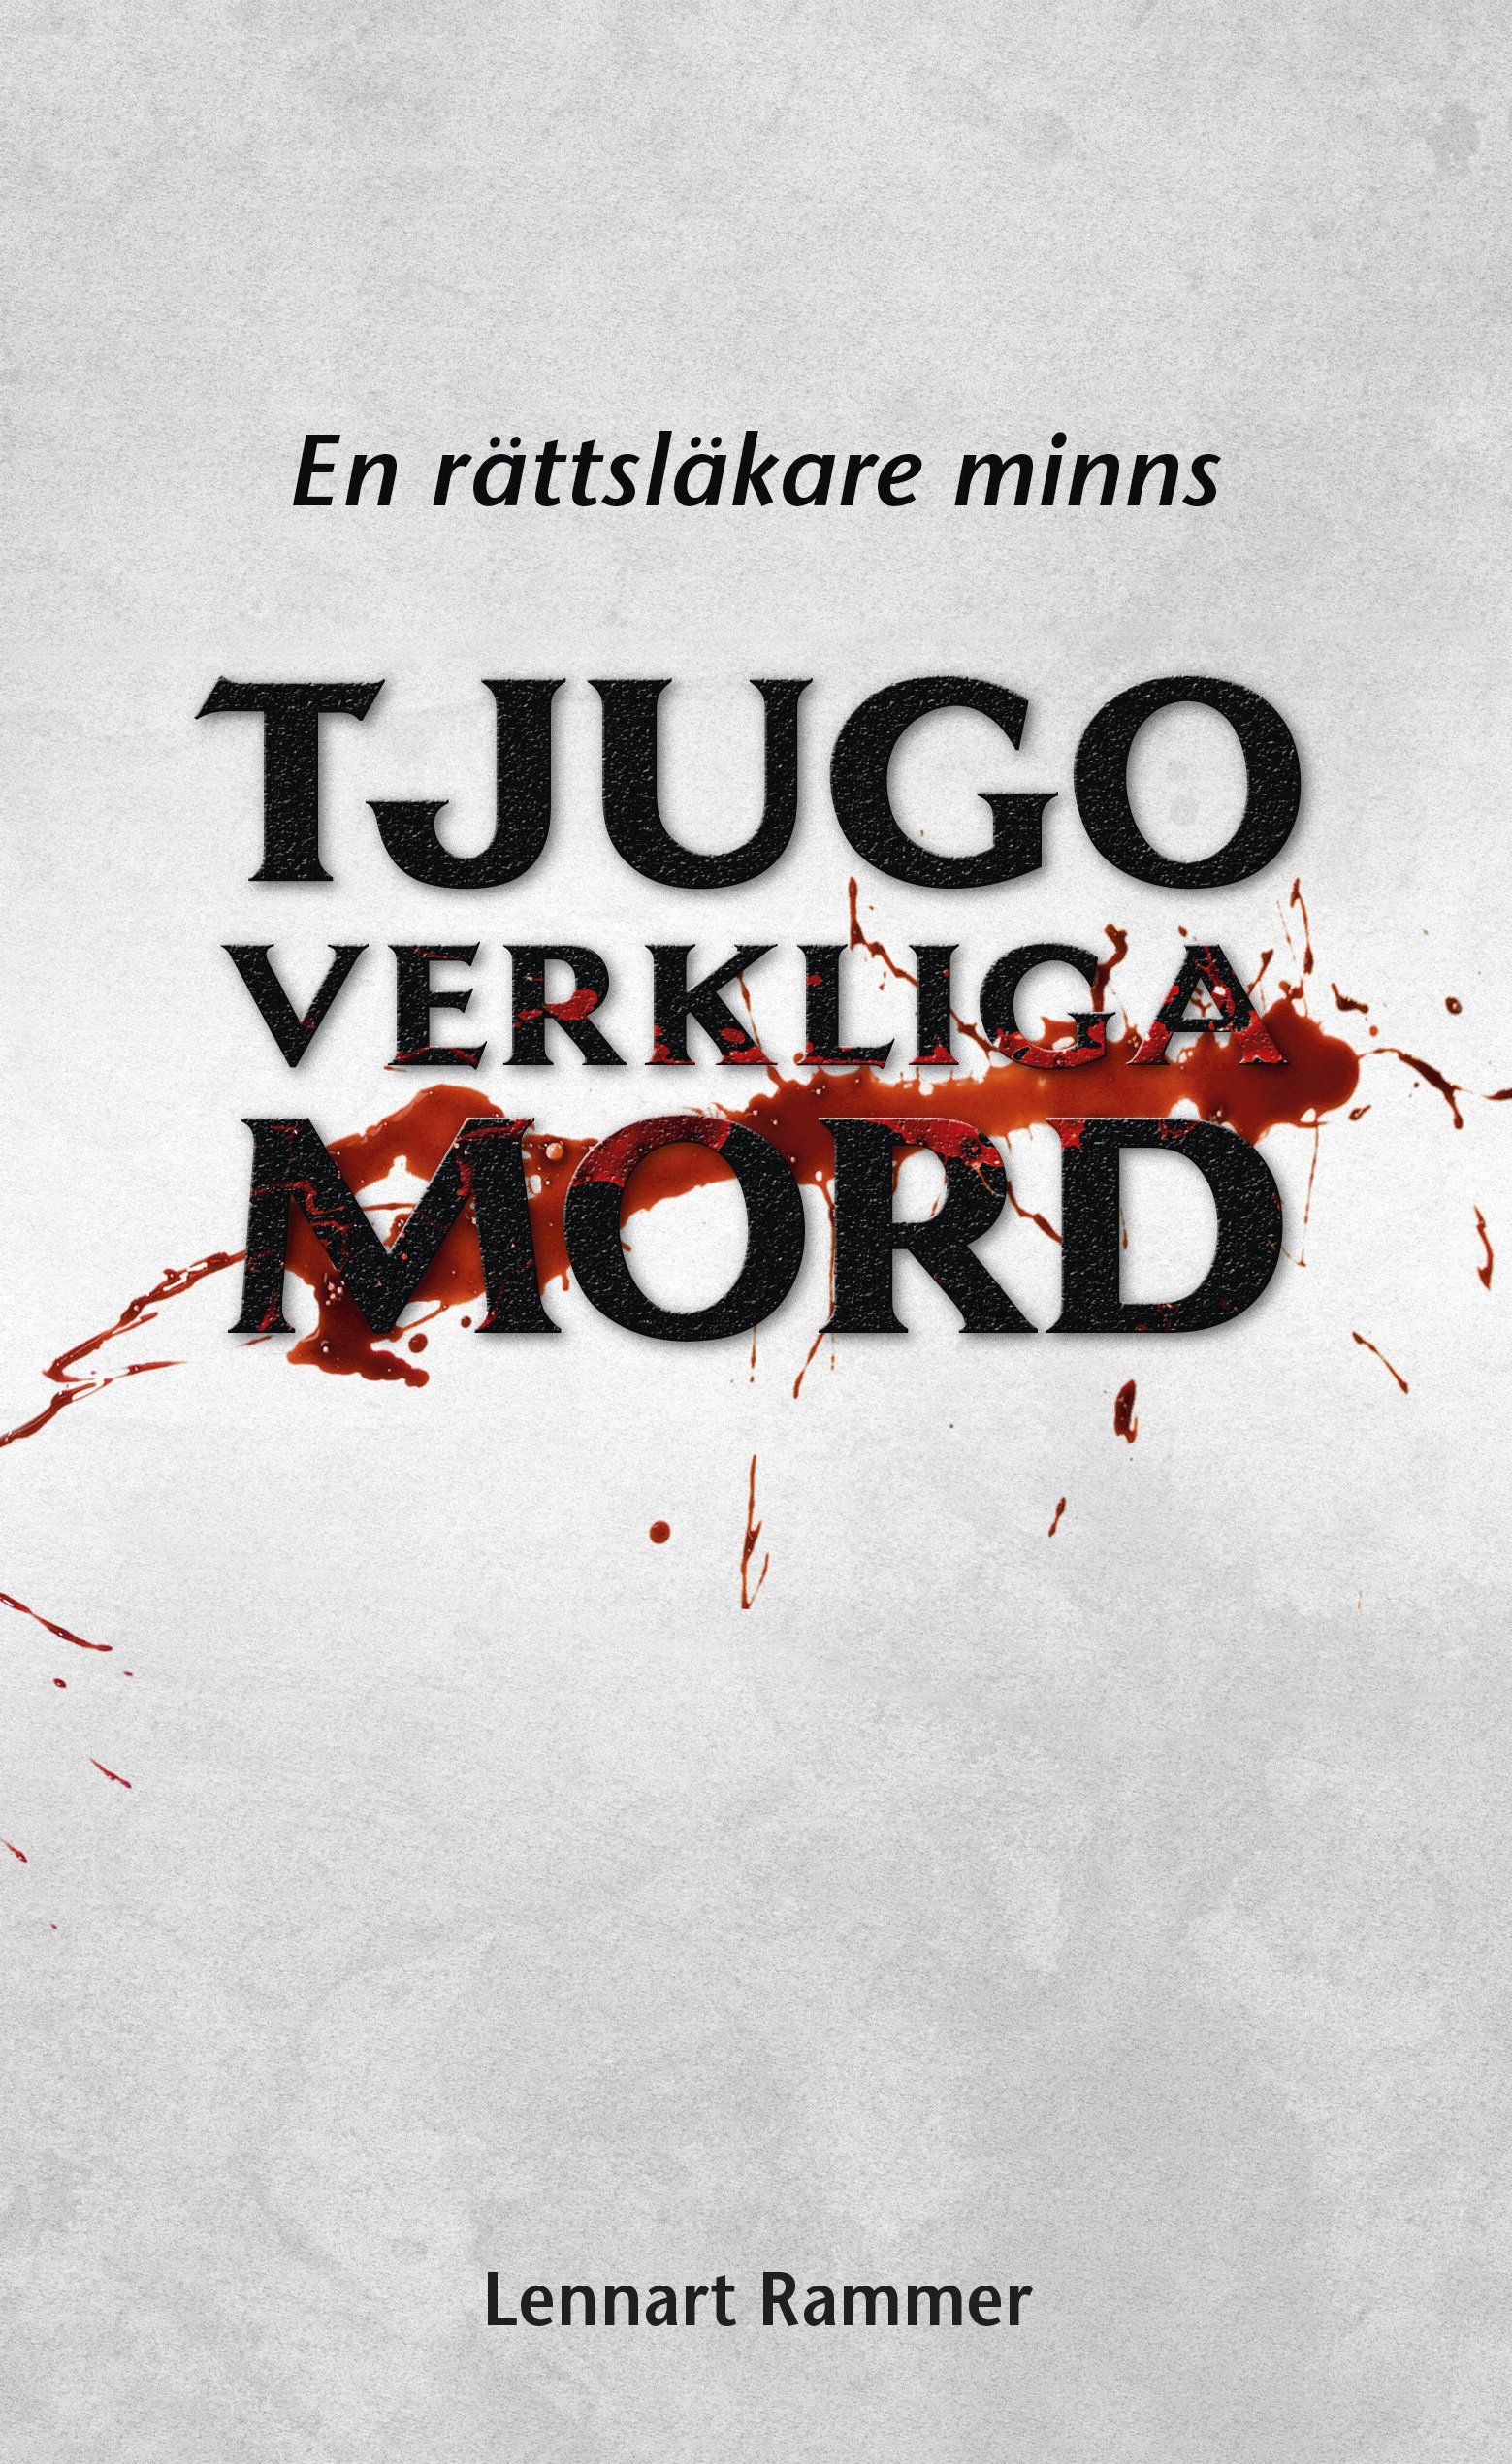 Skönlitterära boken Tjugo verkliga mord: En rättsläkare minns är skriven av Lennart Rammer på Stevali Bokförlag.